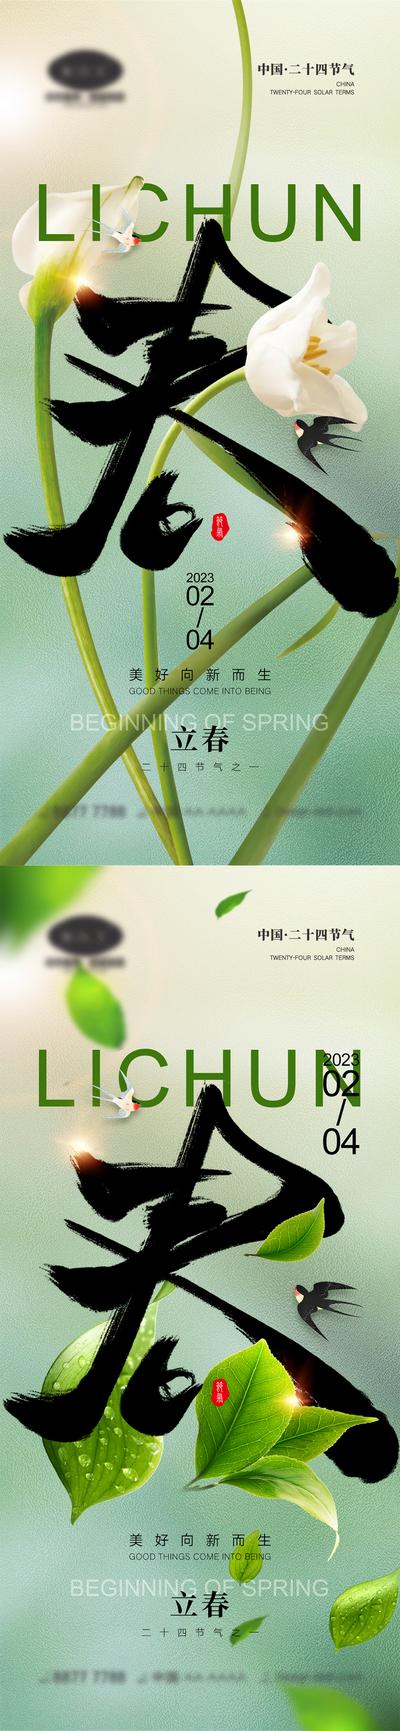 南门网 海报 二十四节气 立春 春天 燕子 花朵 树叶 系列